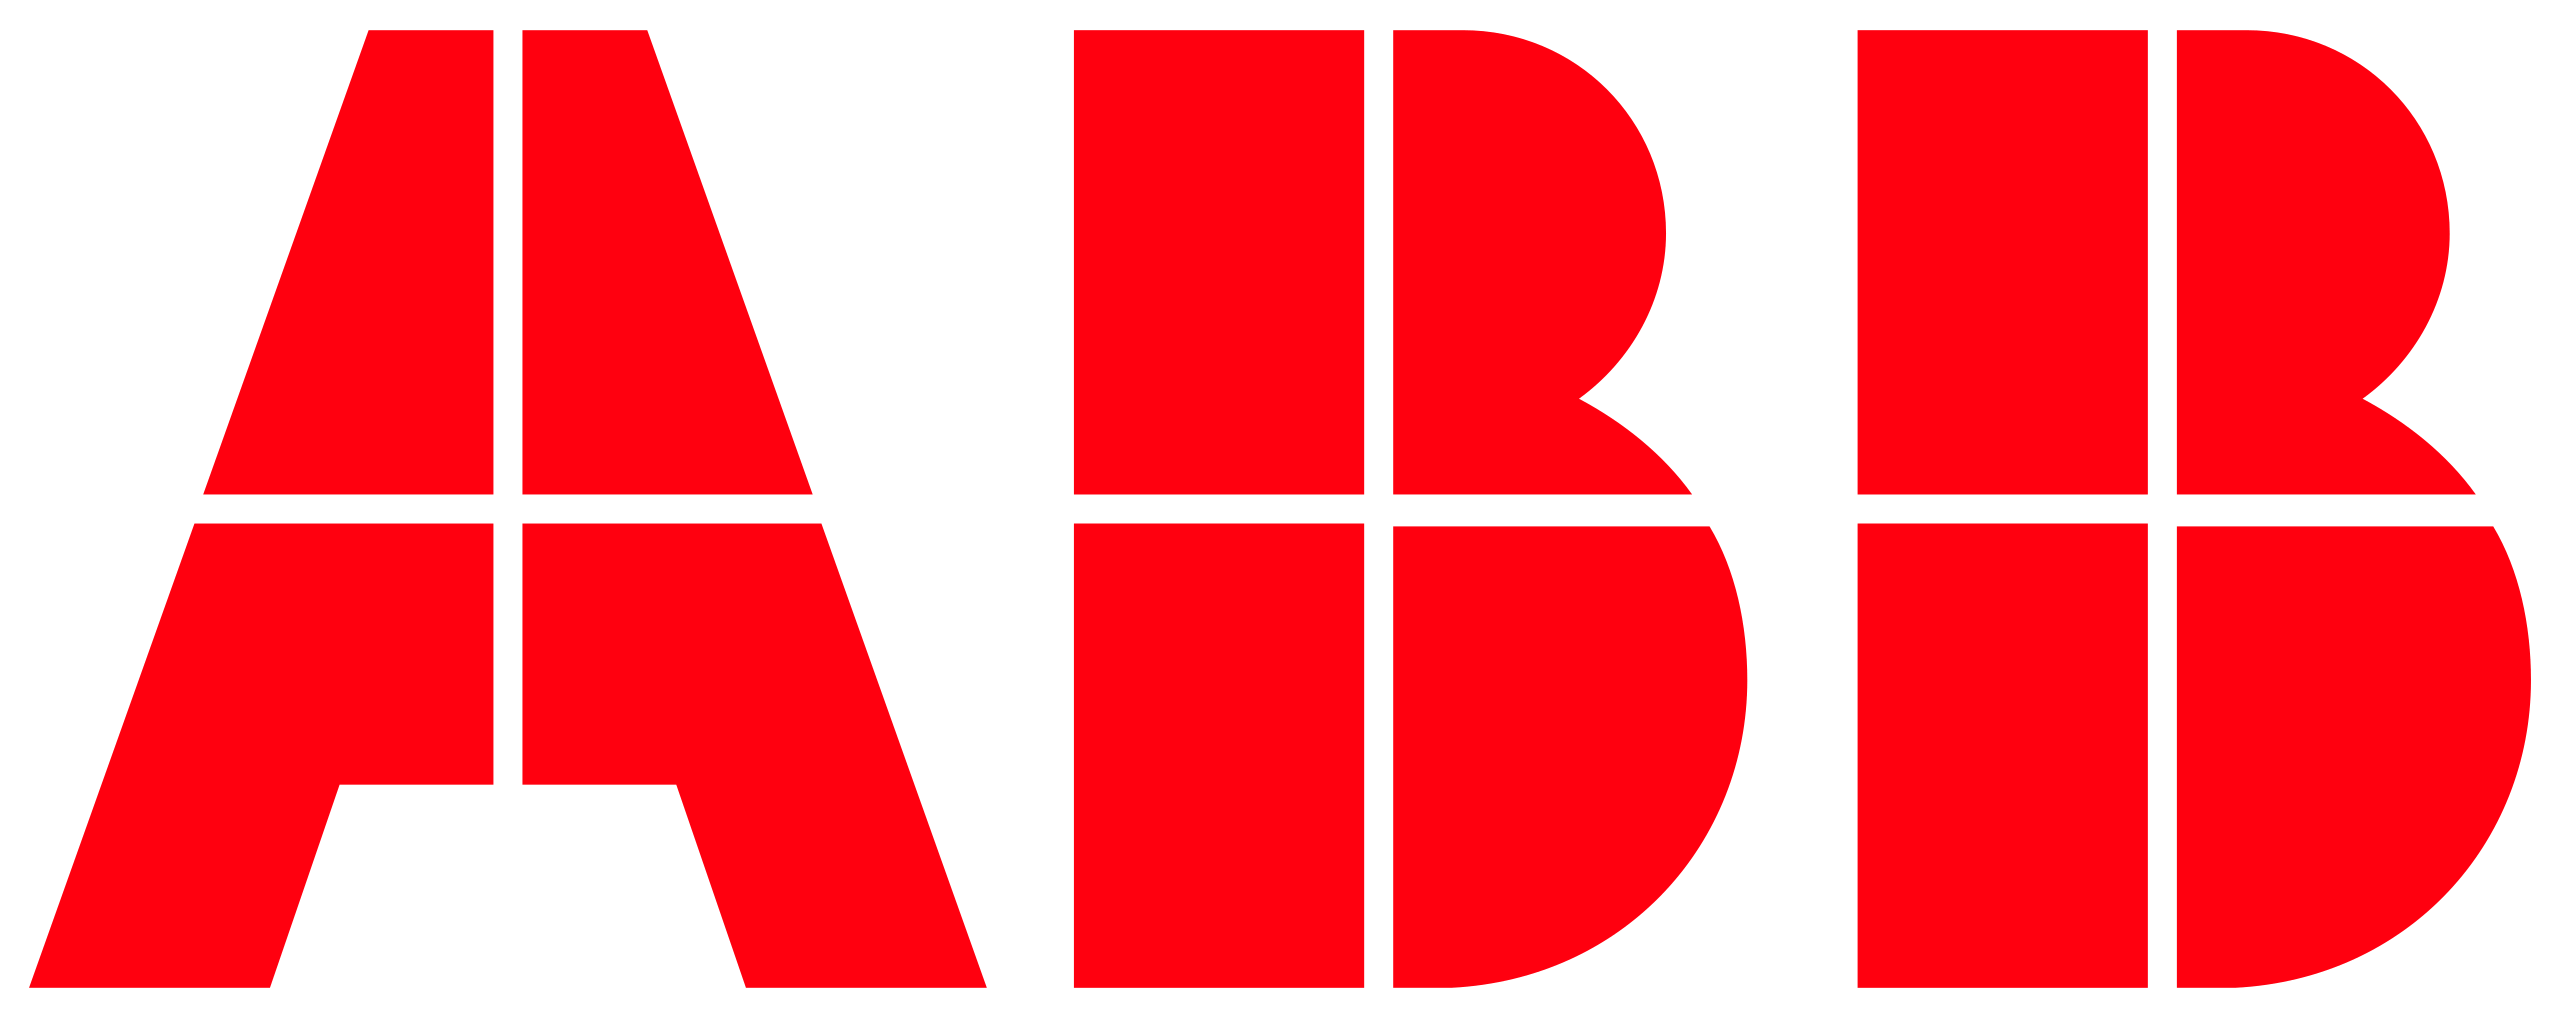 برند ABB